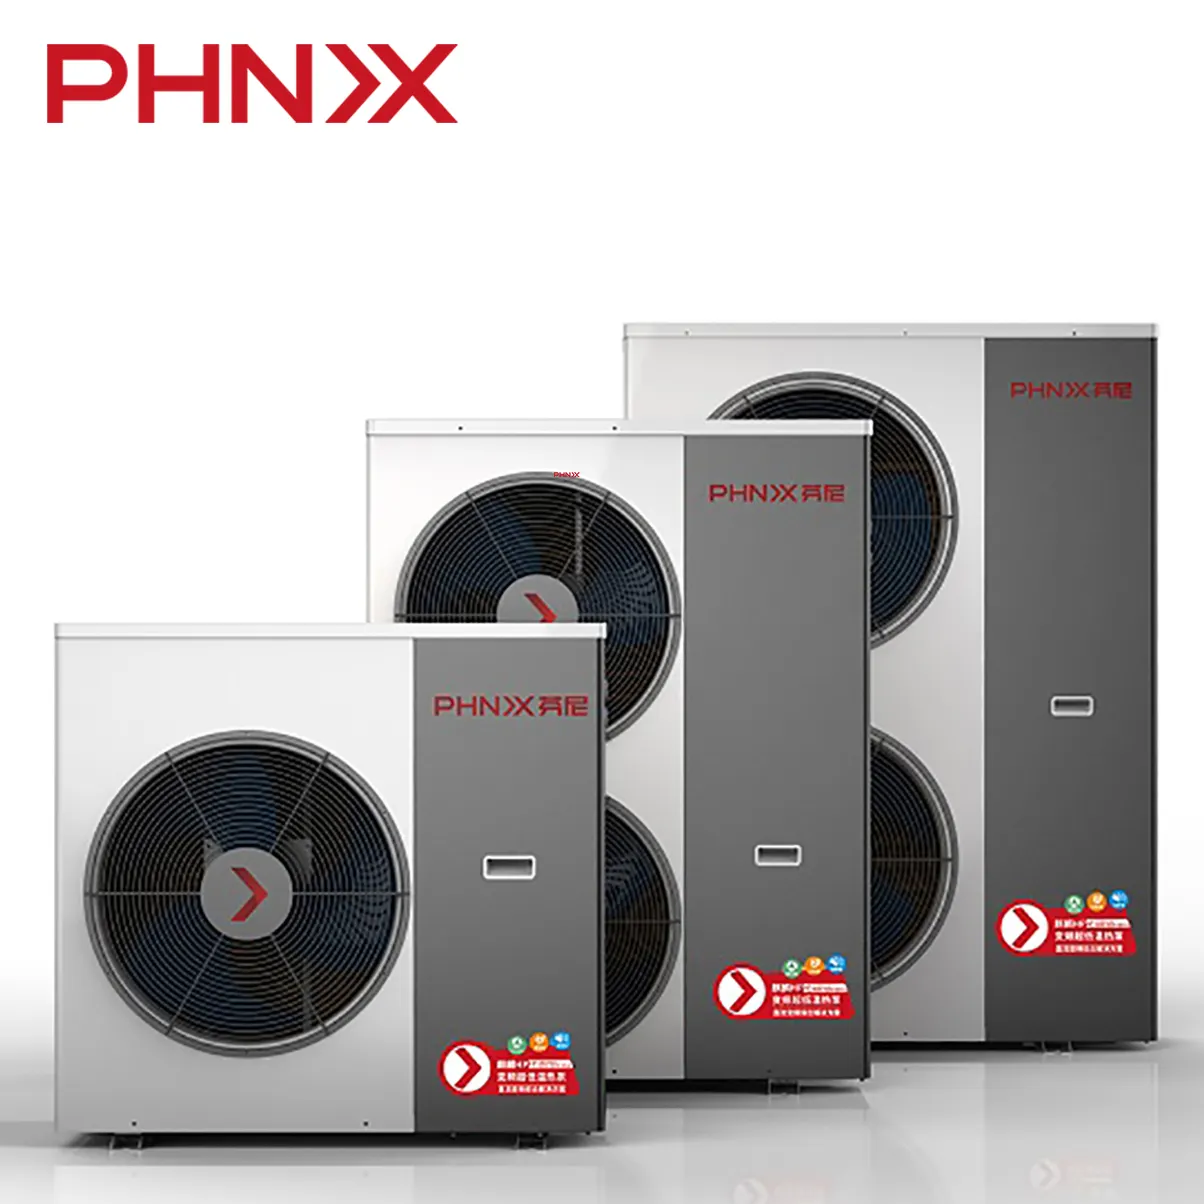 Phnix HP14 2020 Warmtepomp Verwarming Systeem + Waterpomp Voor Verwarming